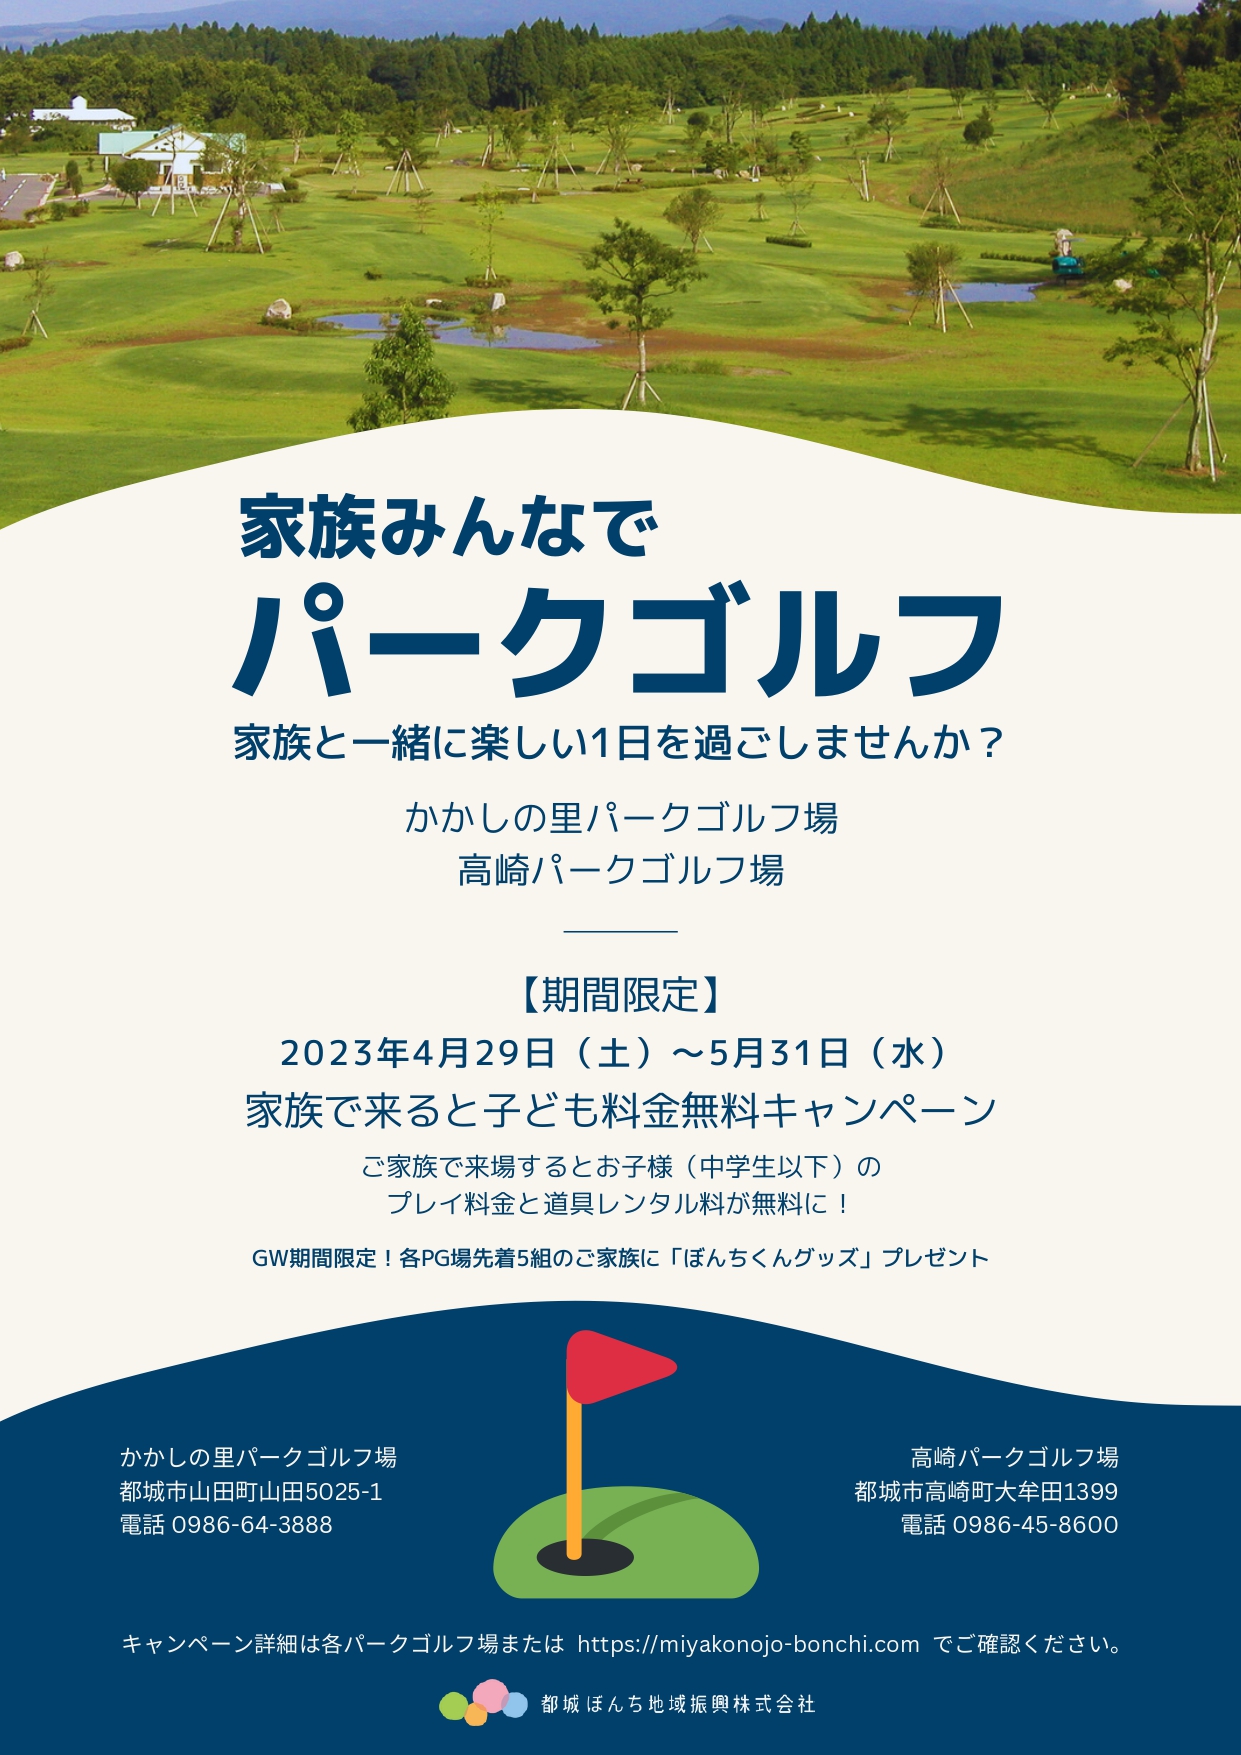 <p>「家族みんなでパークゴルフ」キャンペーン [4/29~5/31]</p>